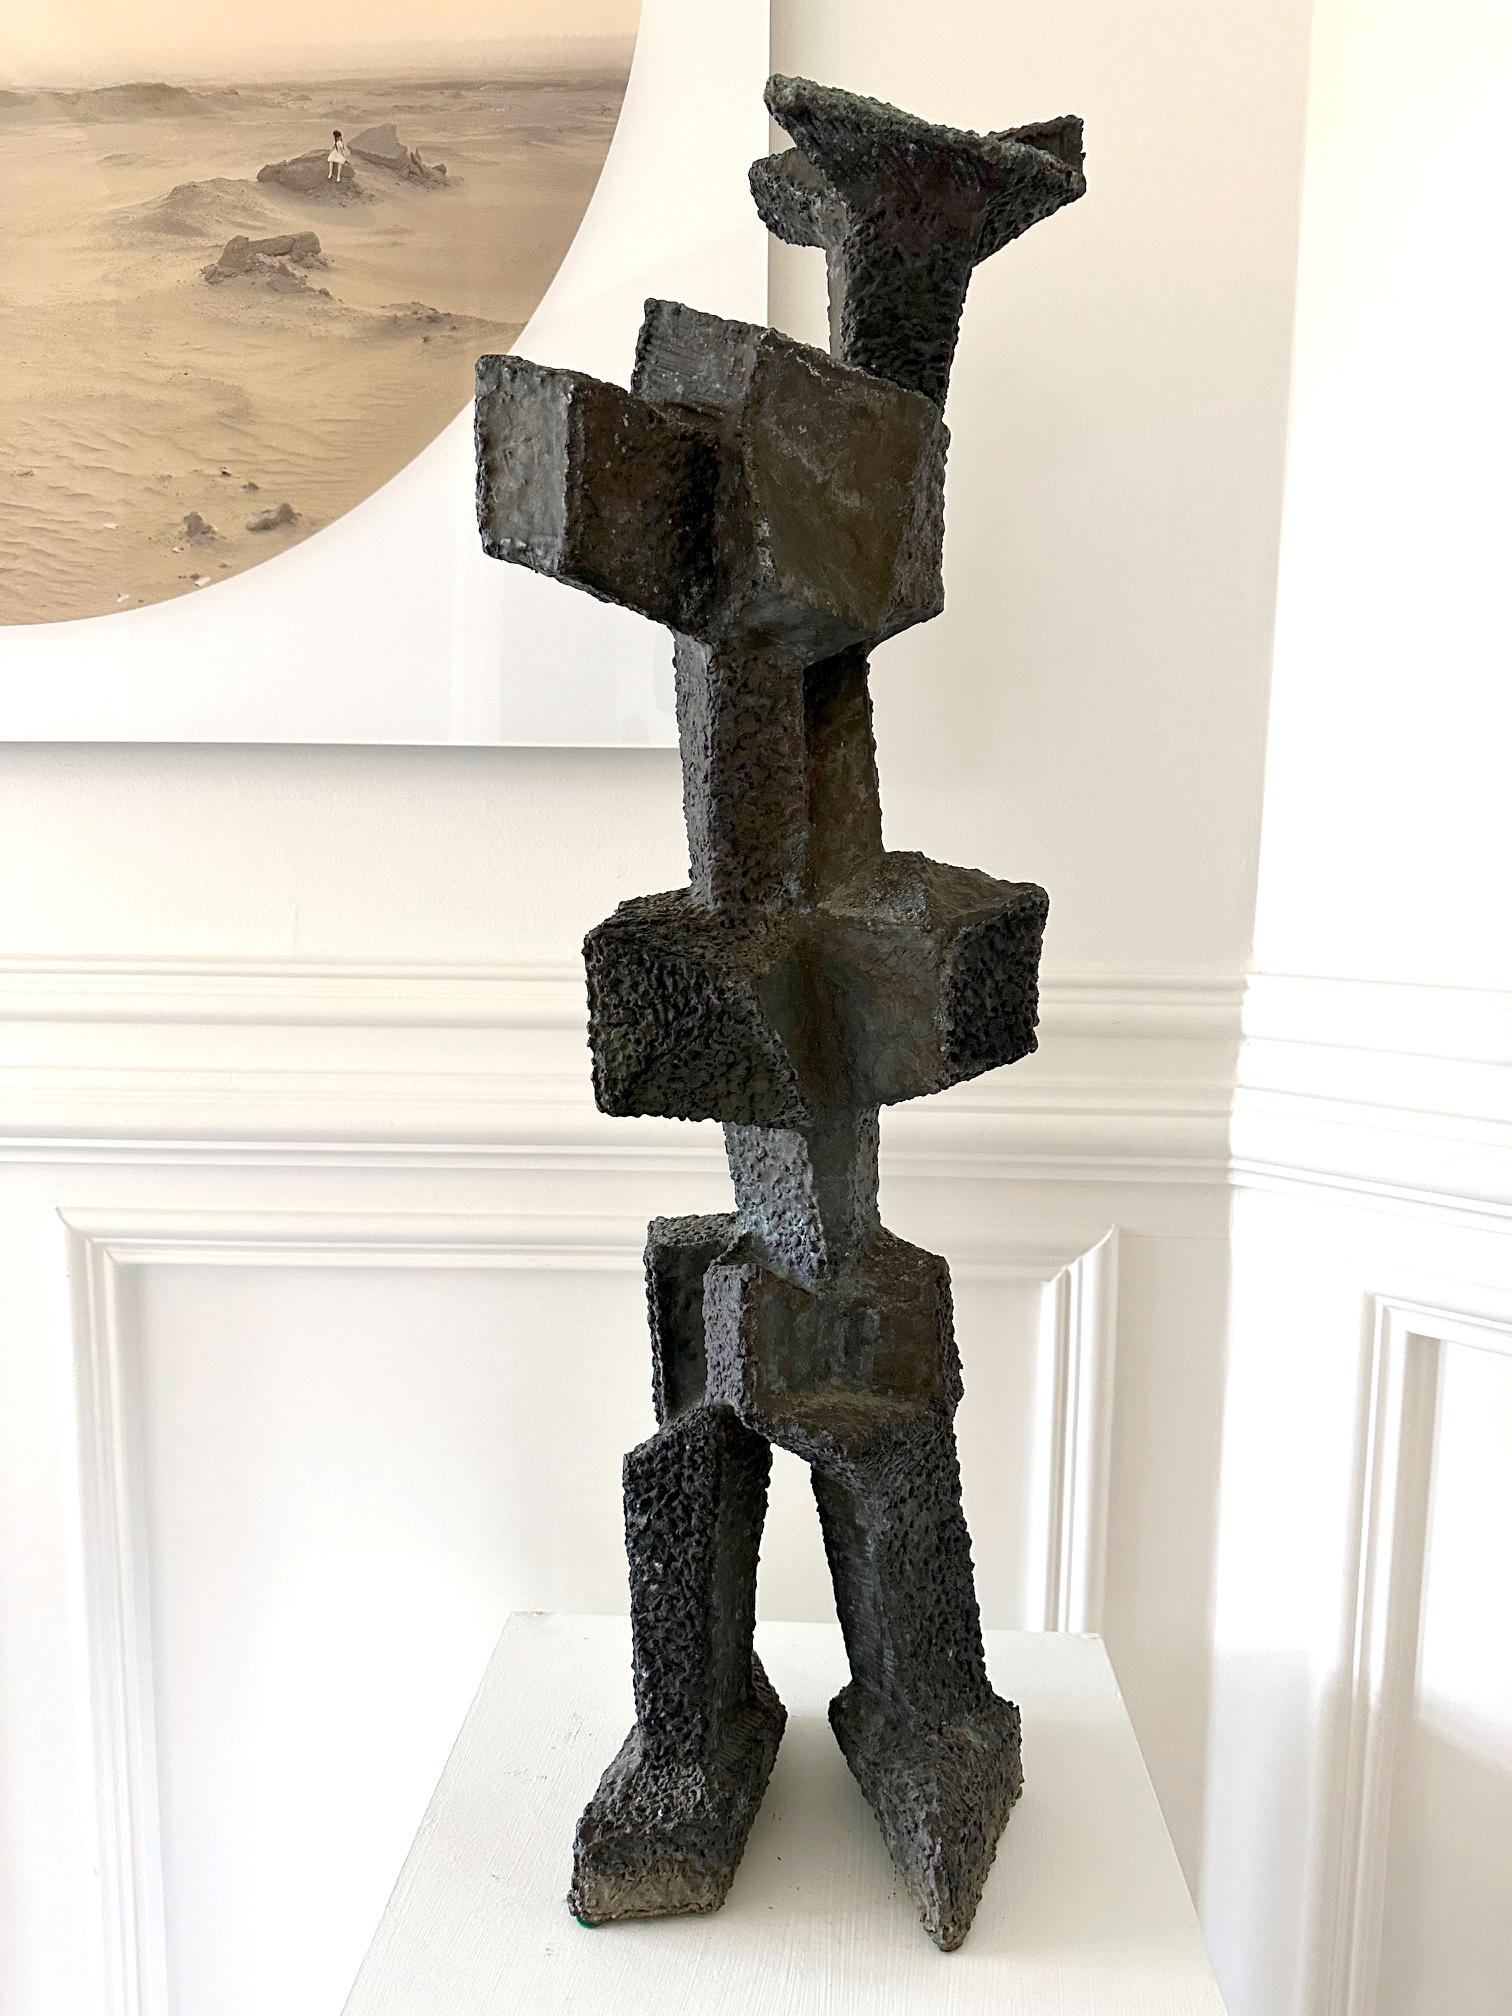 Sculpture en bronze unique datant des années 1960, réalisée par Harry Bertoia (1915-1978), célèbre artiste, sculpteur et designer américain d'origine italienne. La sculpture en bronze soudé et patiné se présente sous une forme abstraite de